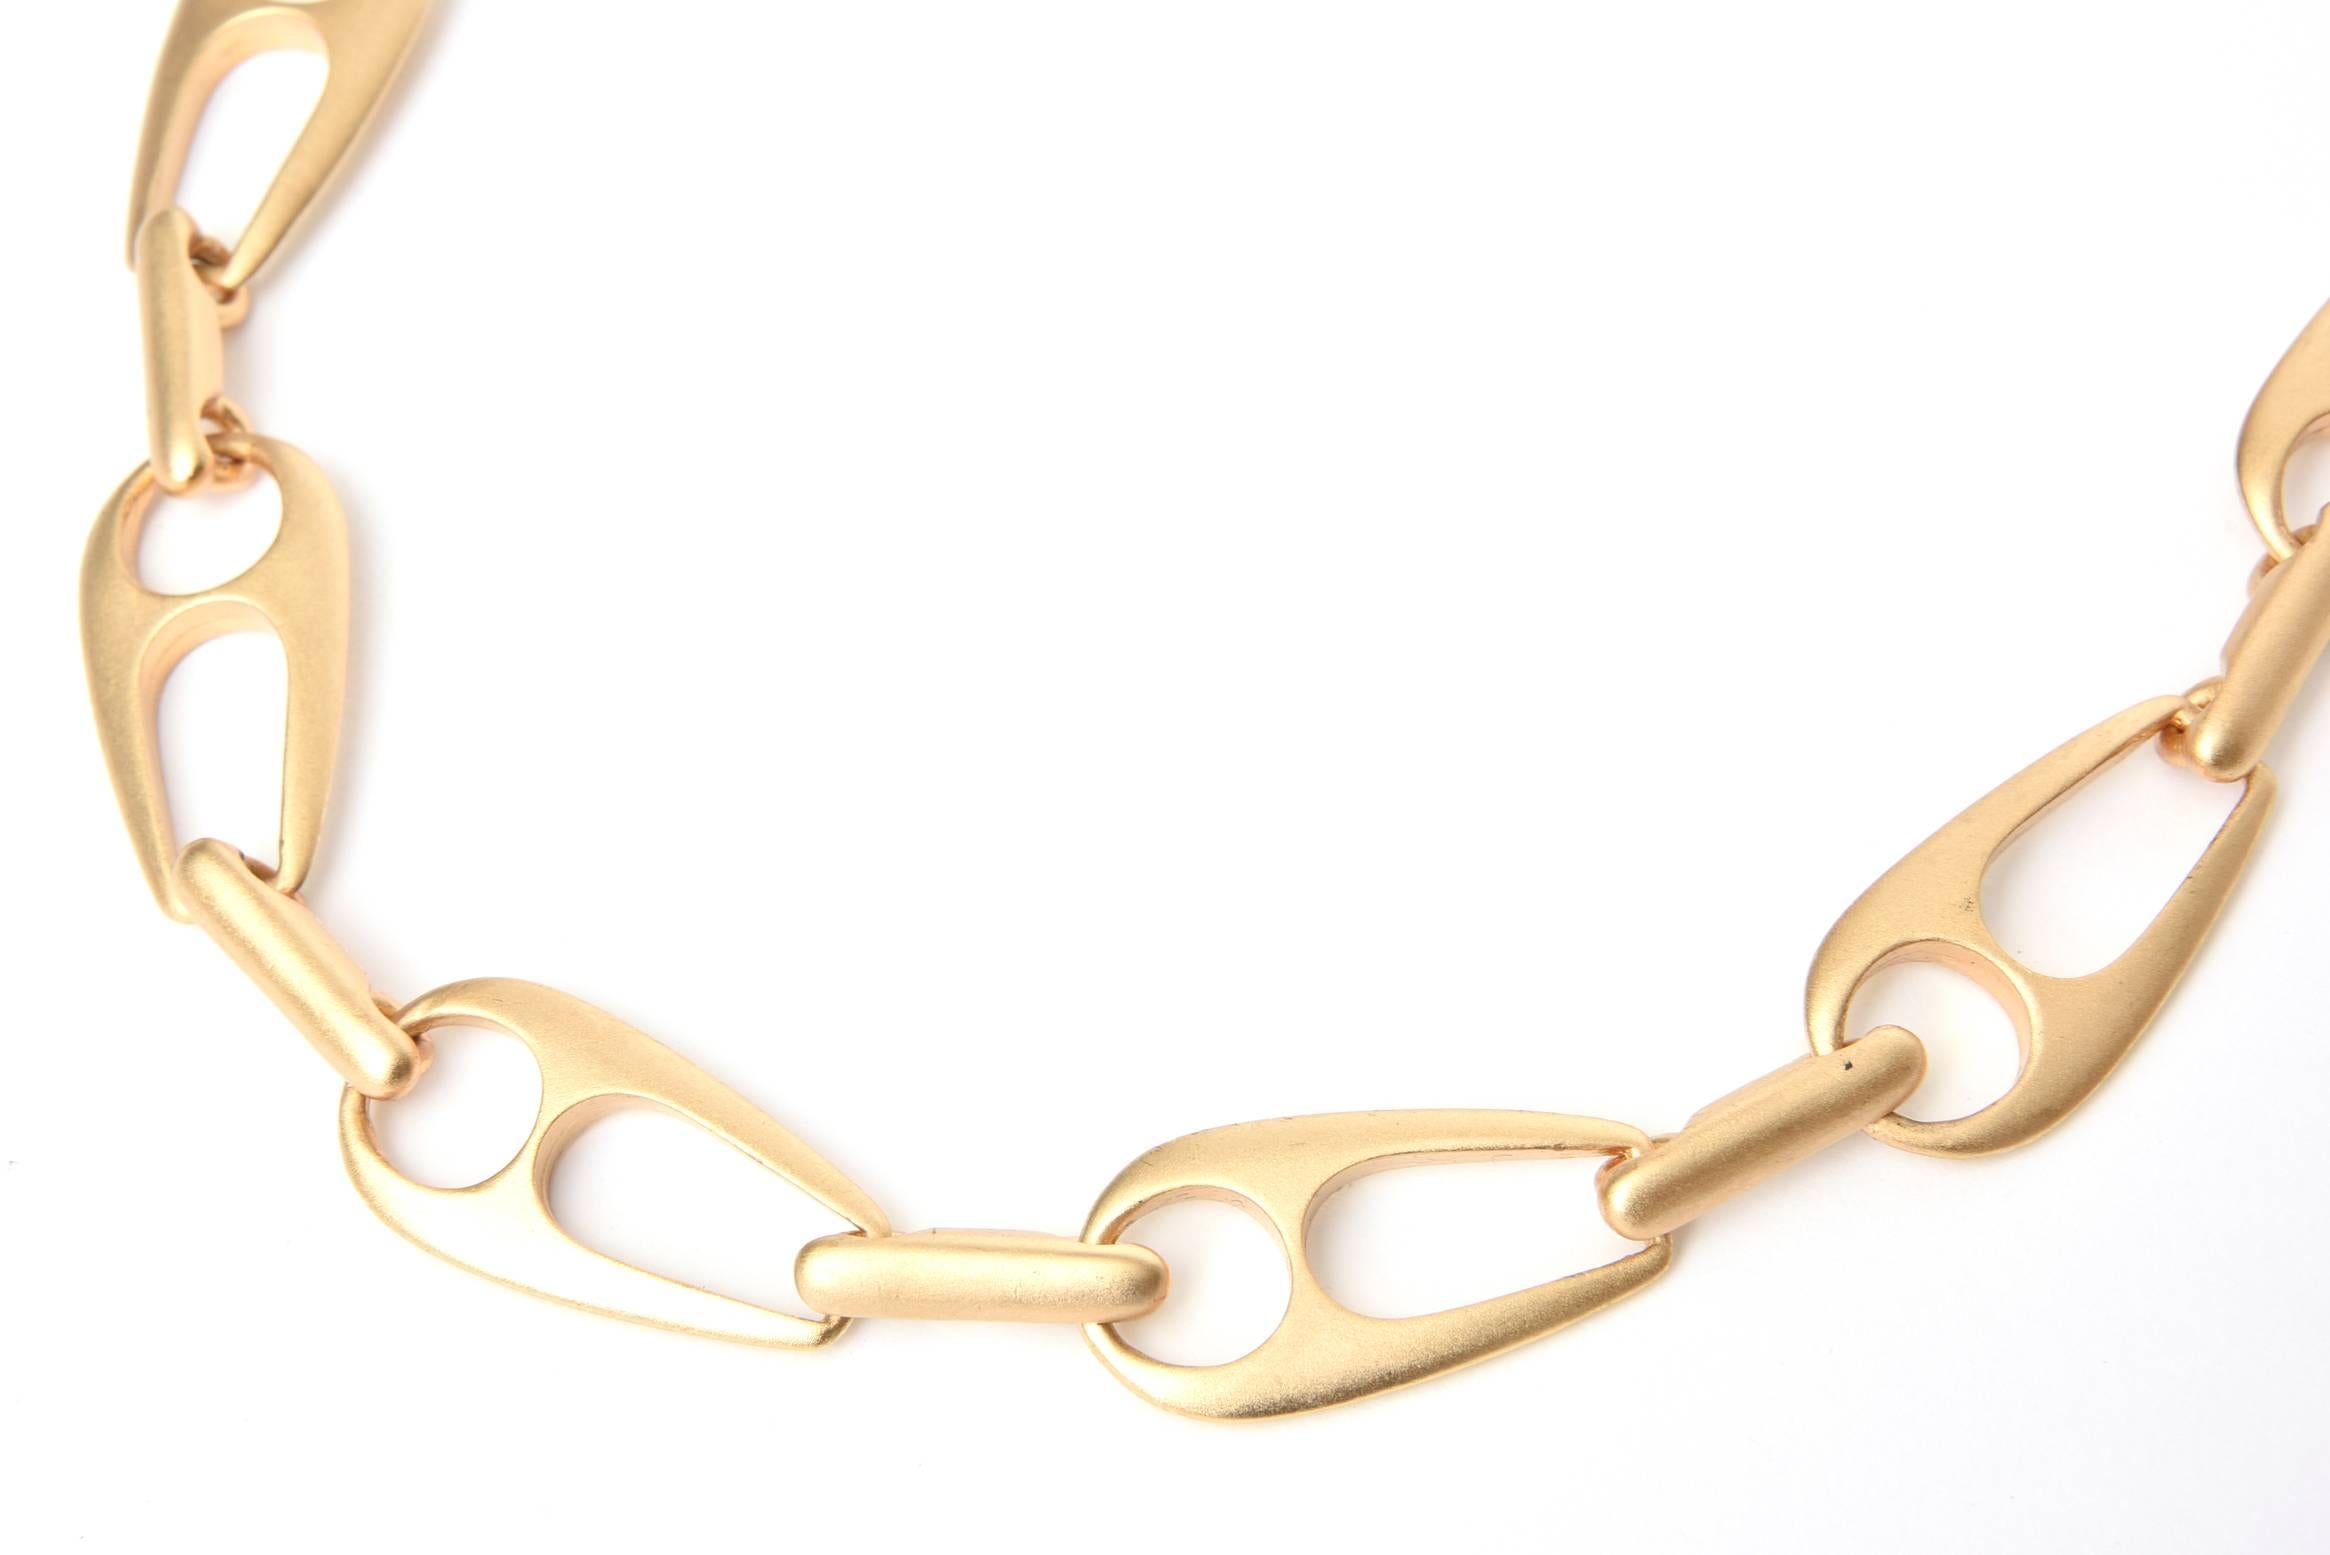 Diese wunderbare:: satinierte und vergoldete Halskette ist von Gucci inspiriert und wird Alexis Kirk zugeschrieben:: obwohl sie unsigniert ist. Sie ist skulptural und modern. Er hat ein gutes Gewicht. Jedes Glied ist einen Zoll breit und 1::85 Zoll